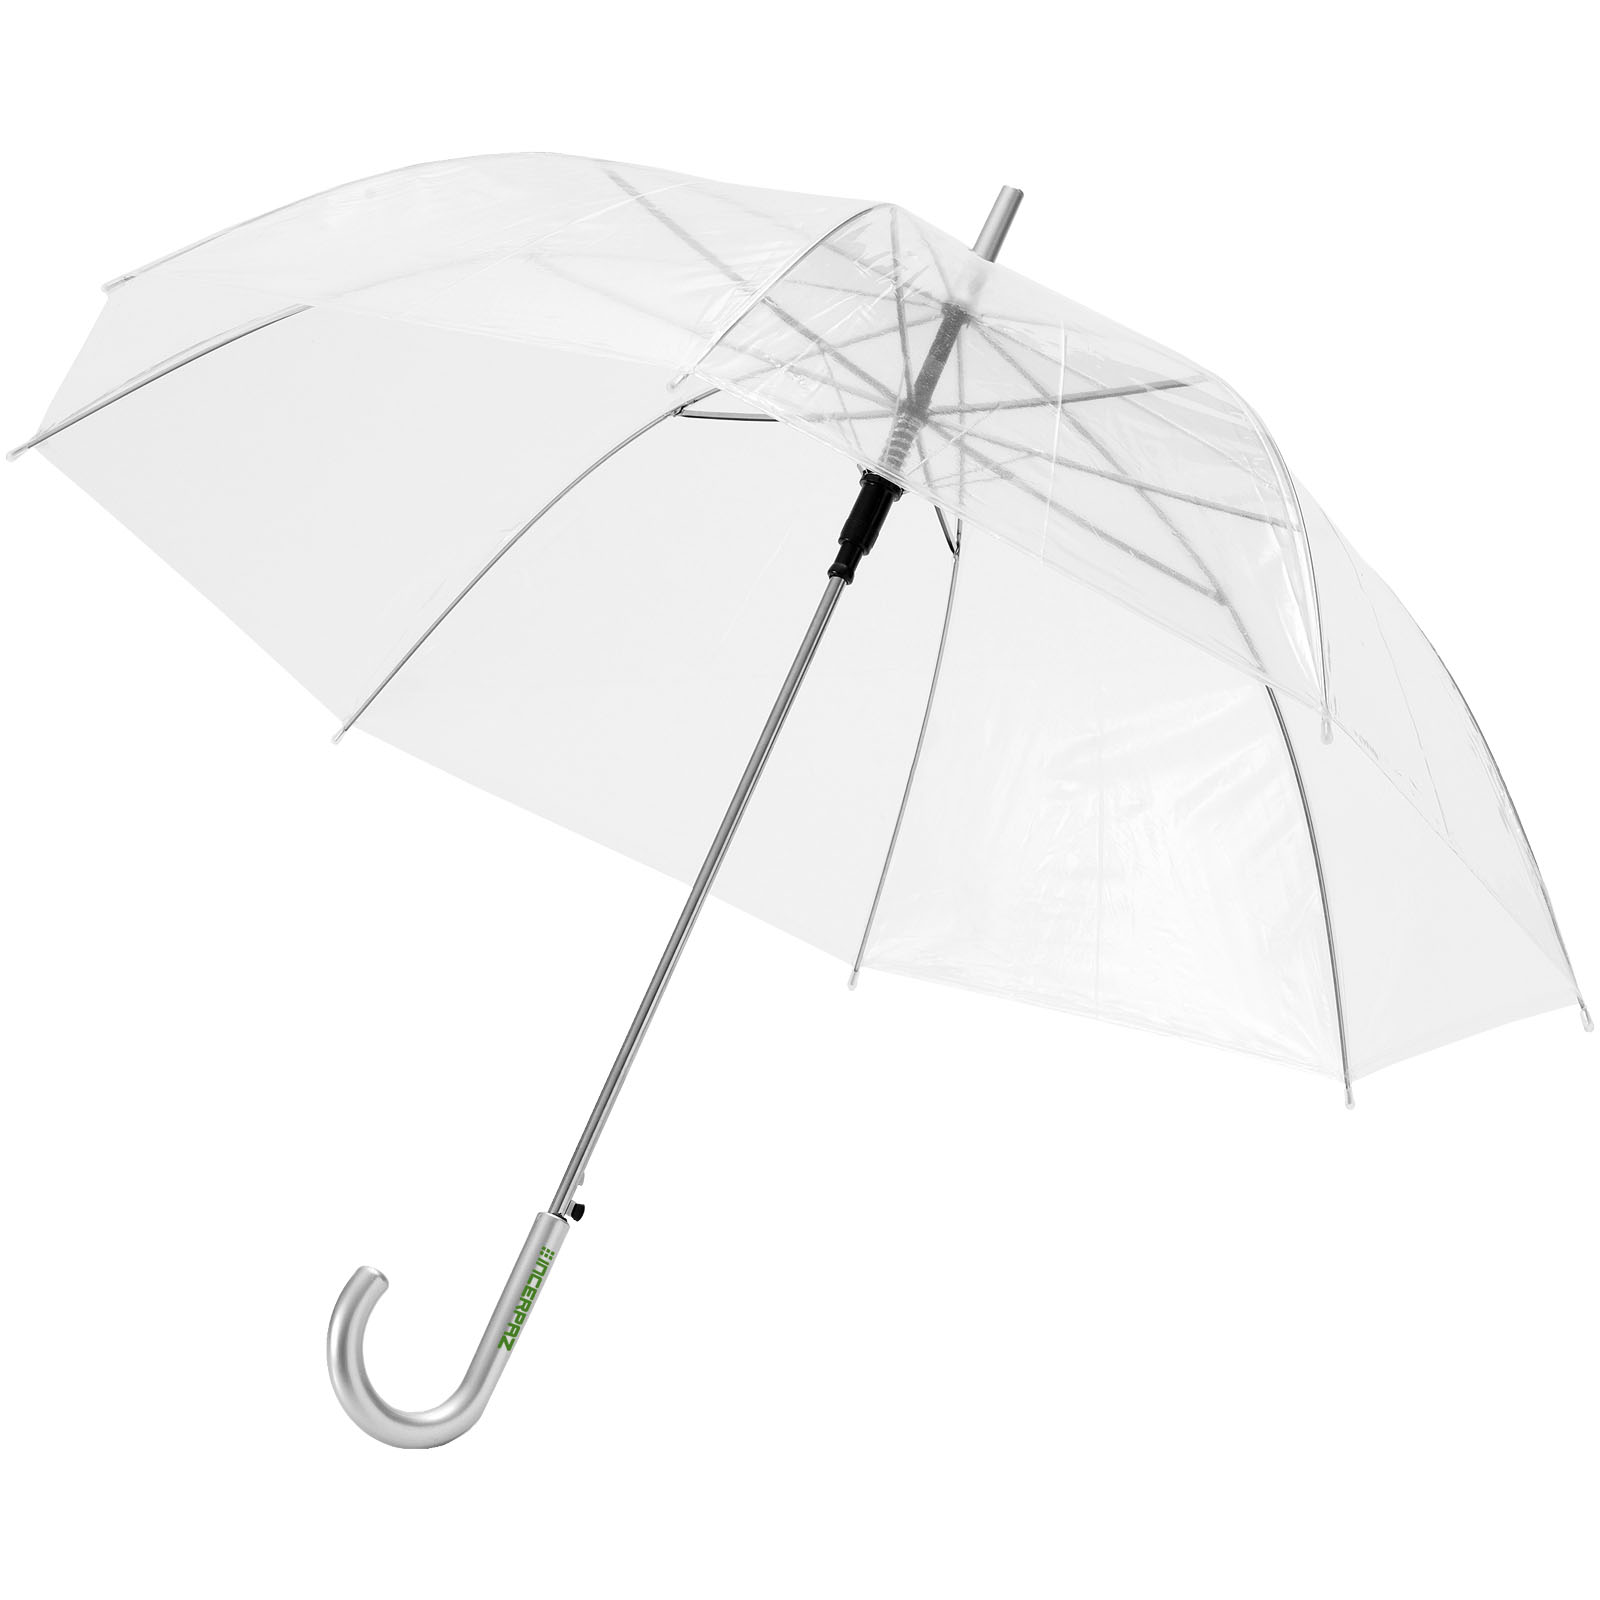 liberaal kiem Dubbelzinnig Doorzichtige paraplu bedrukken? - Voordelig & snel bestellen